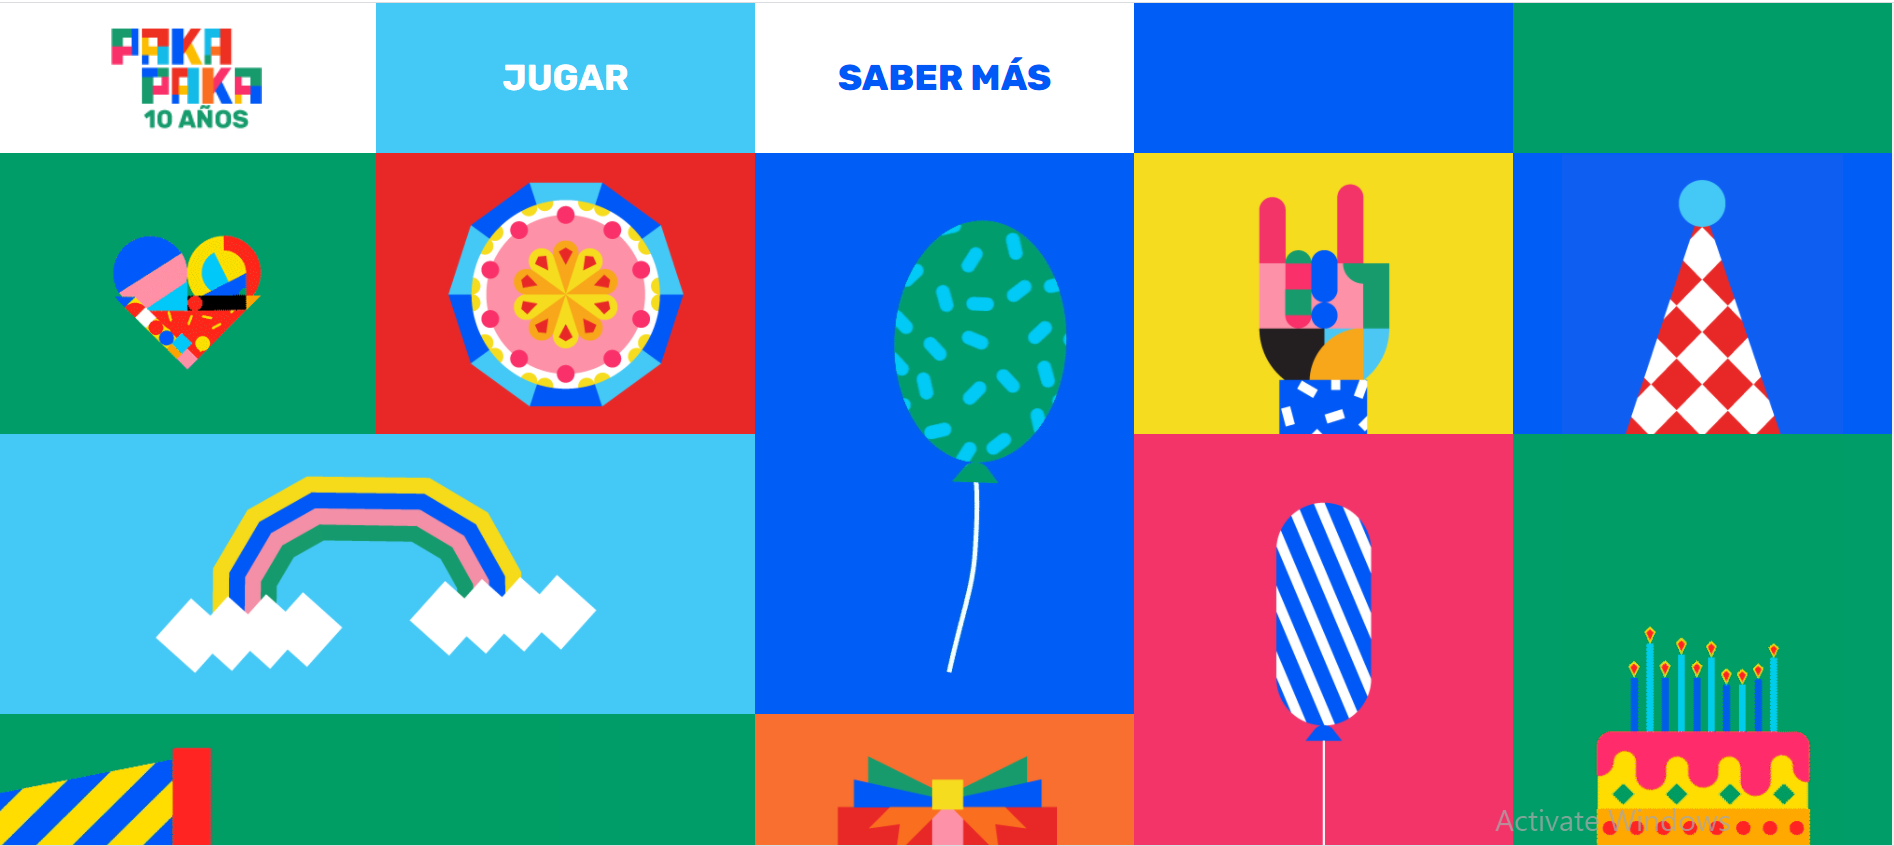 En su décimo aniversario, Pakapaka lanza nueva aplicación y un mural interactivo